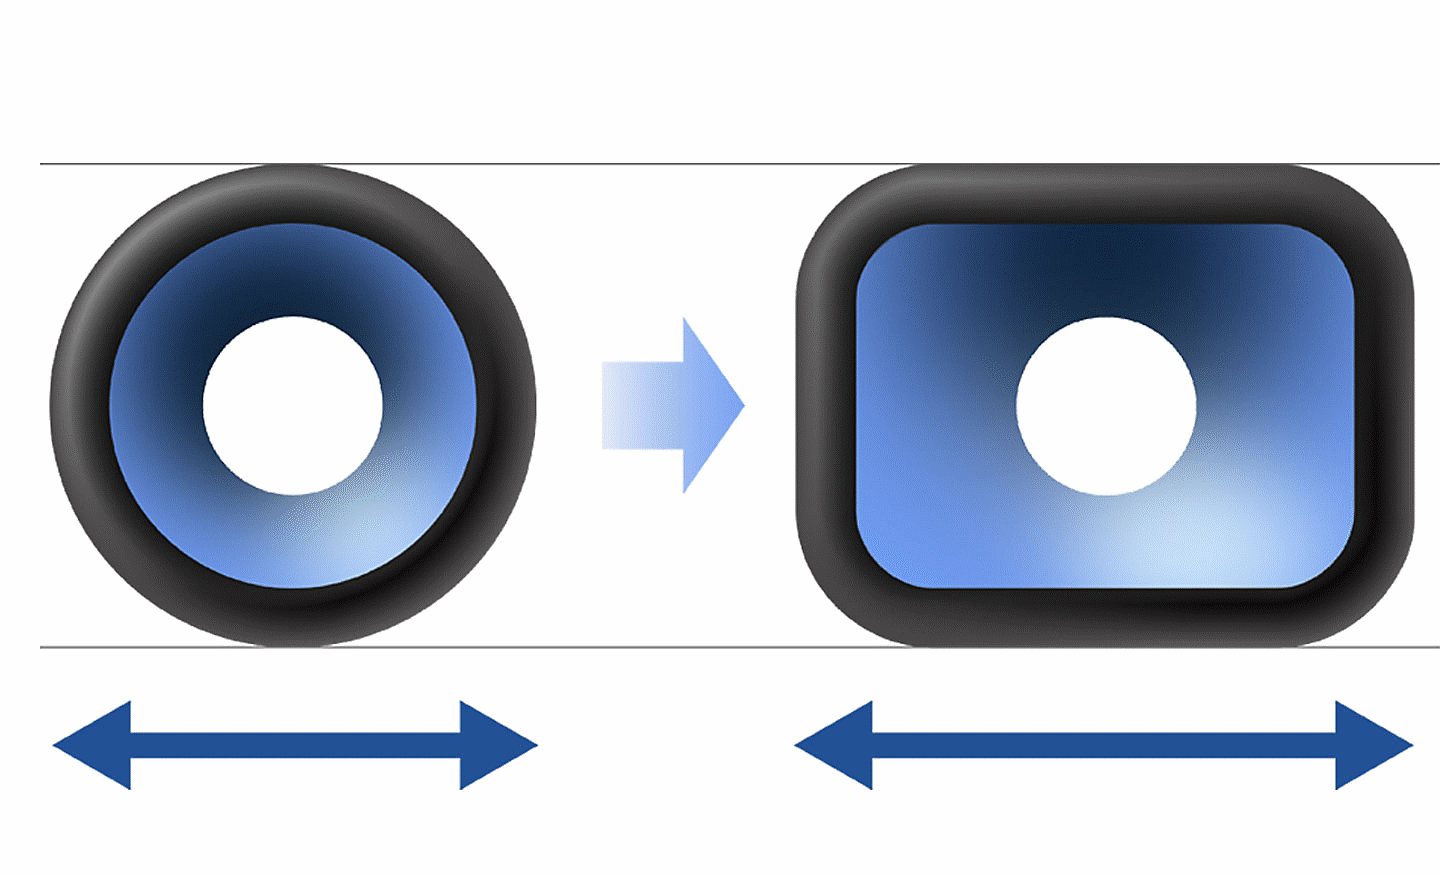 Slika na kojoj je okrugli zvučnik sa leve strane, a pravougaoni zvučnik sa desne, dok se u sredini nalazi strelica okrenuta sleva nadesno